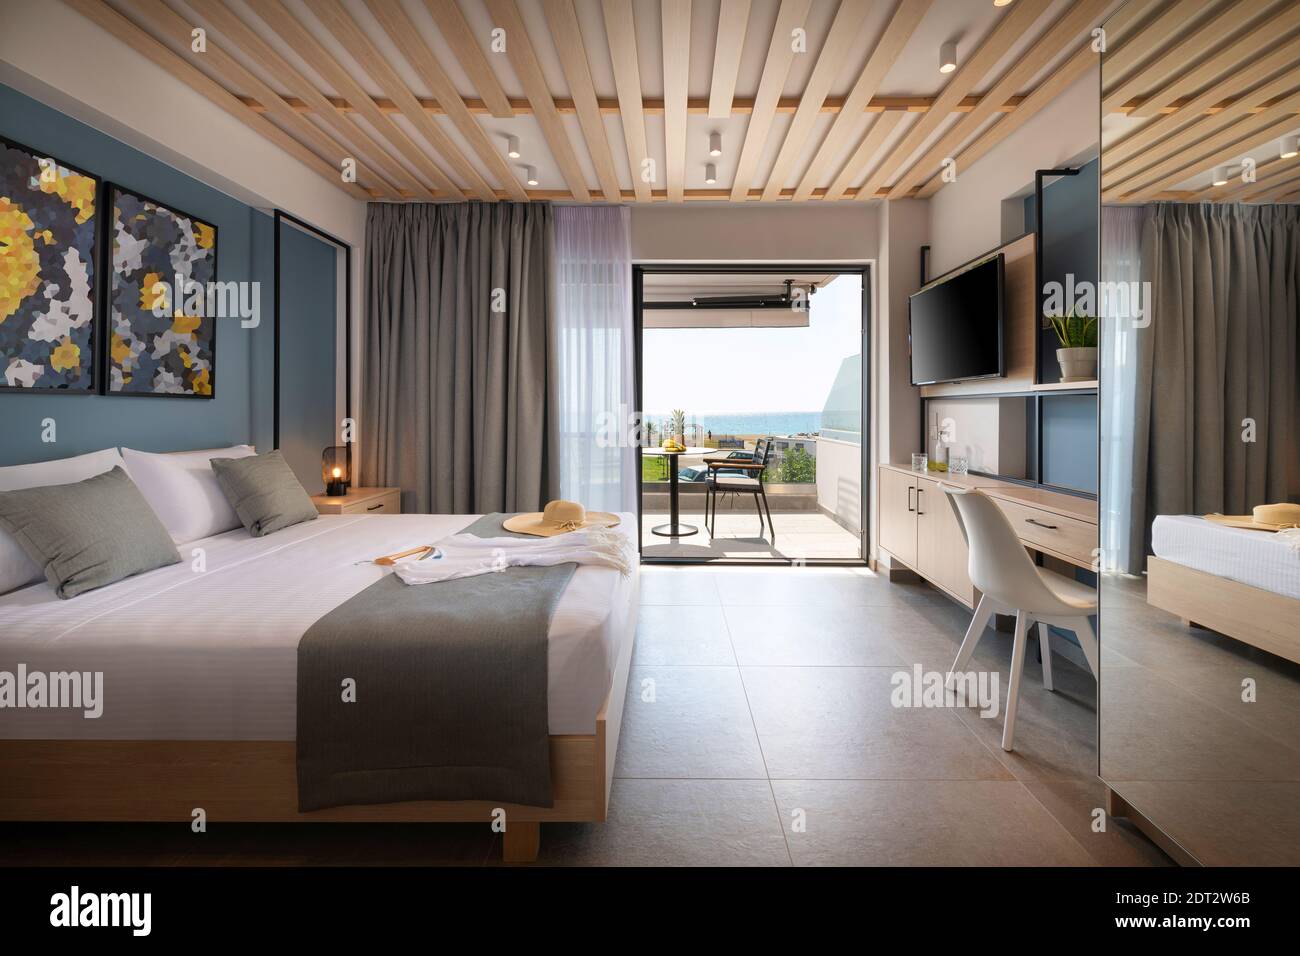 Vue latérale d'une chambre moderne de style loft avec détails en métal, mobilier en bois, décor abstrait. Appartement avec balcon avec vue sur la mer, wi français en plein air Banque D'Images